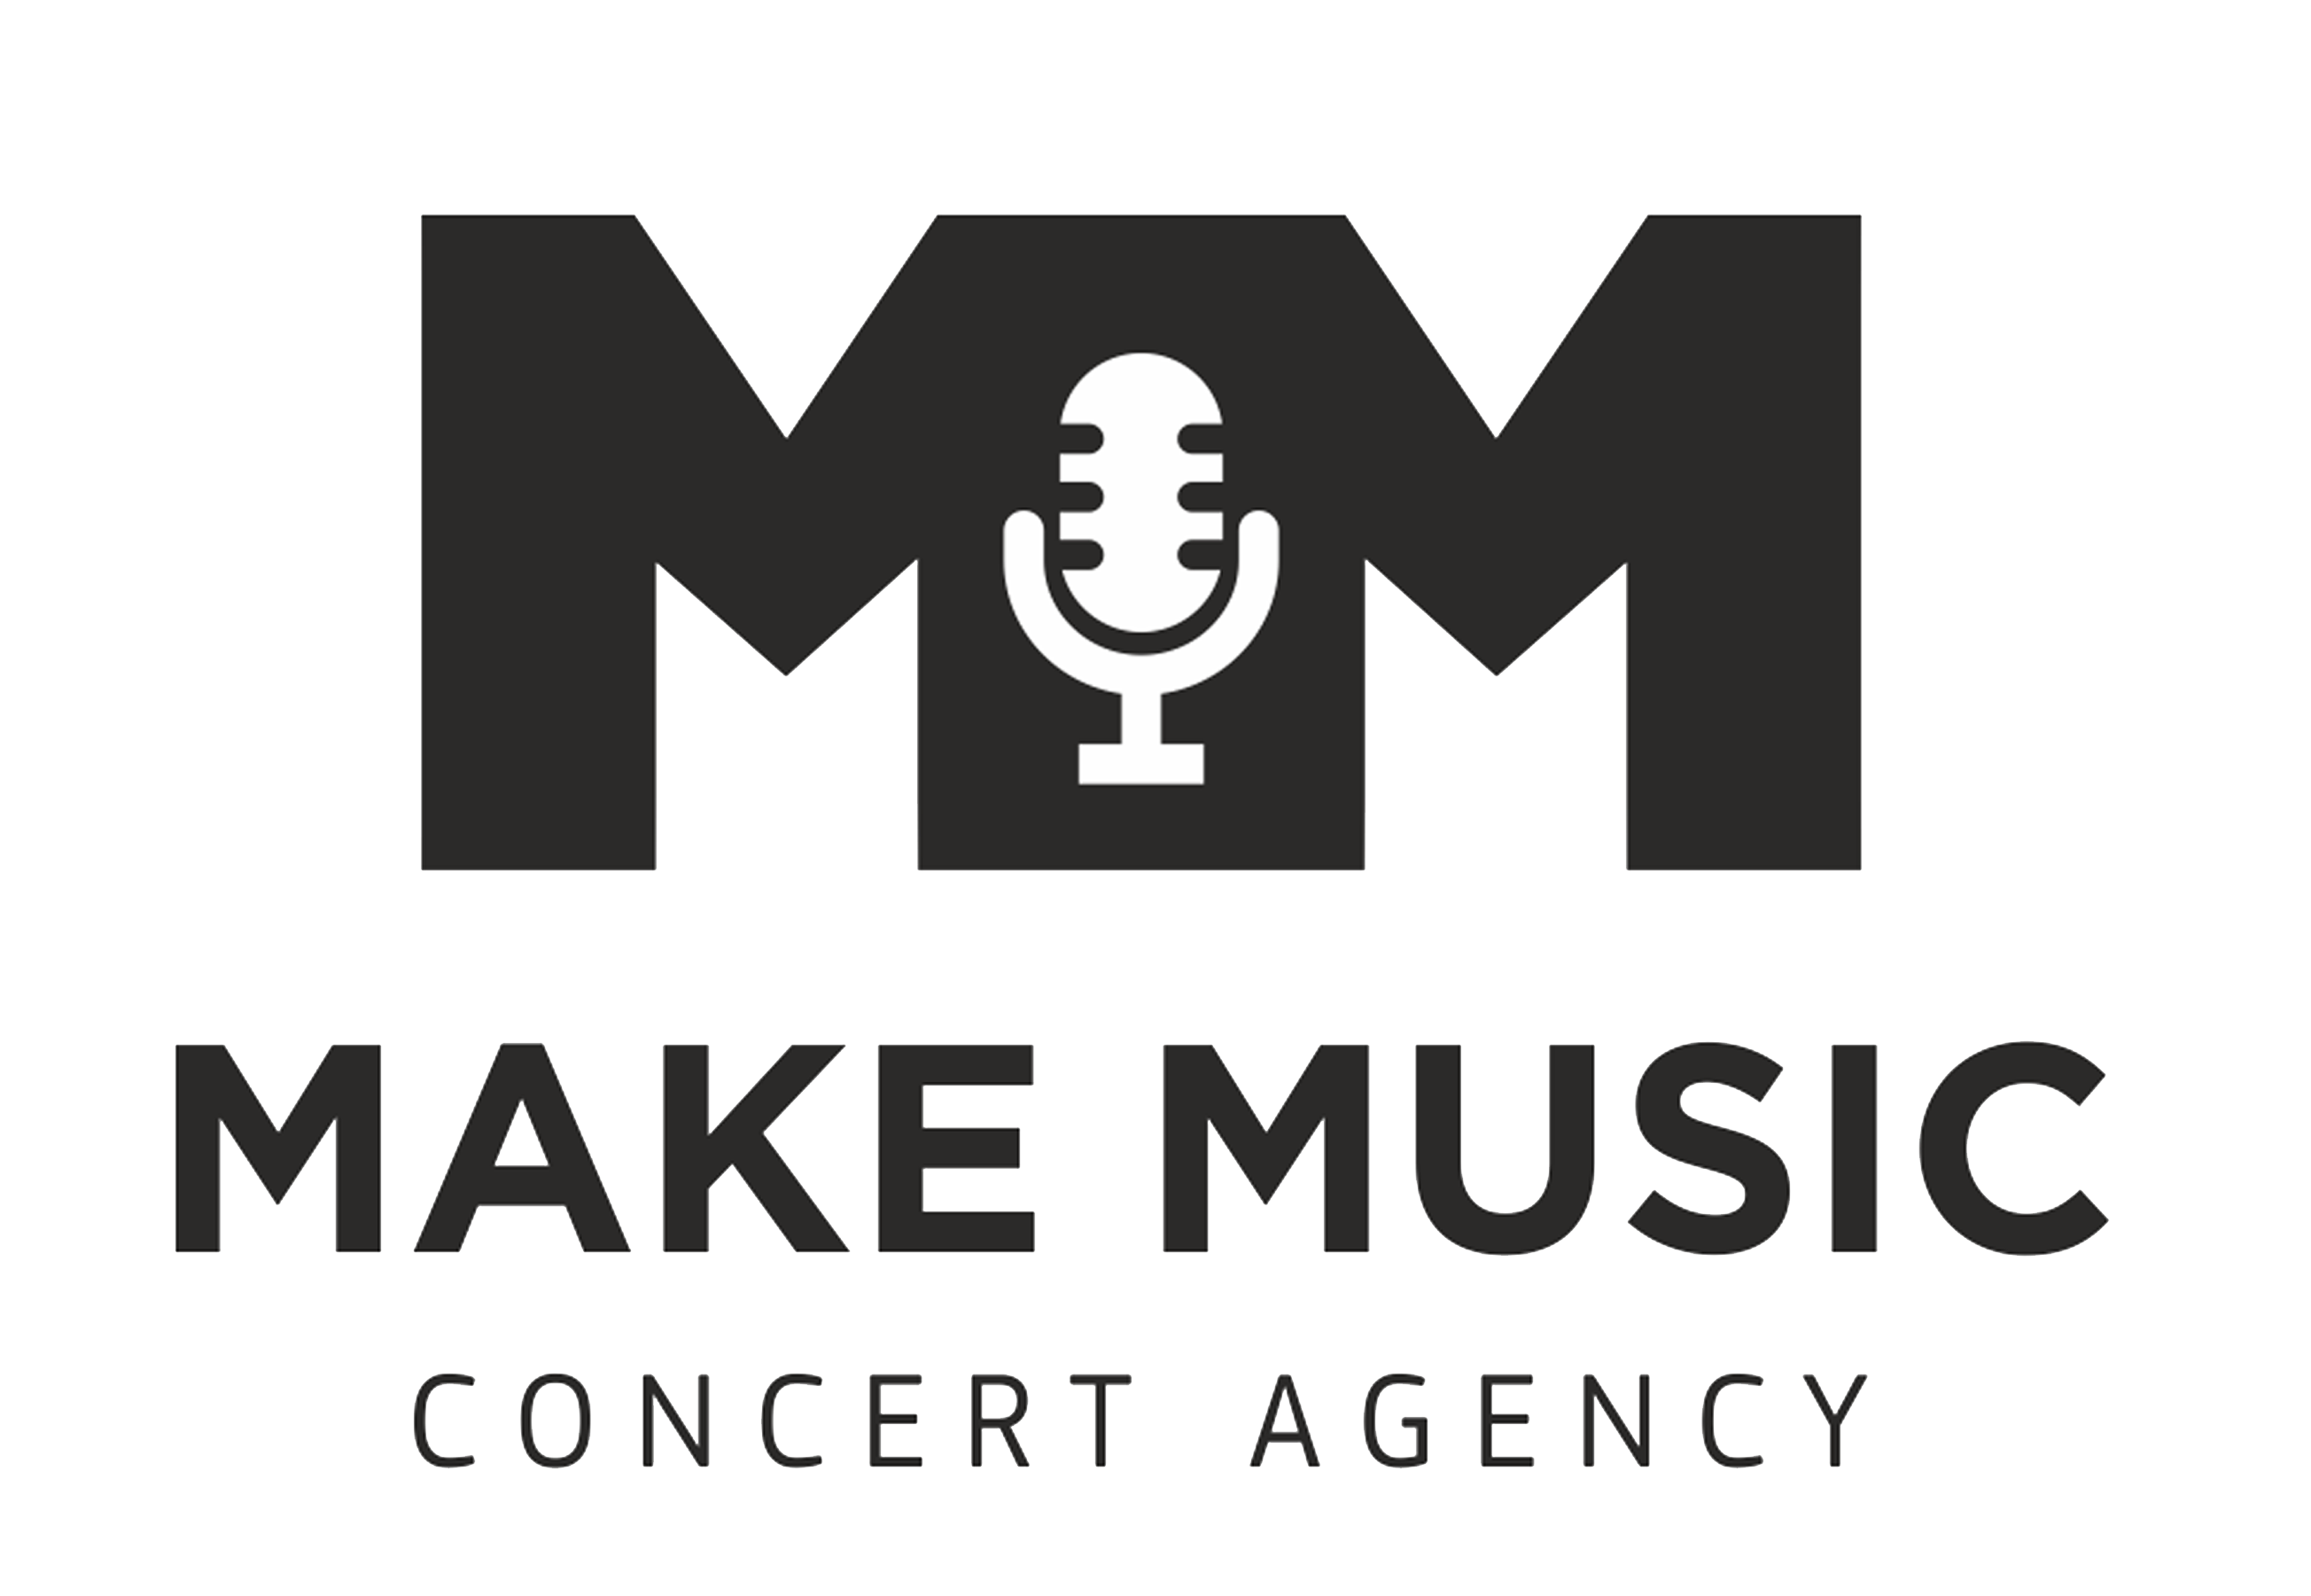 MAKE MUSIC concert agency